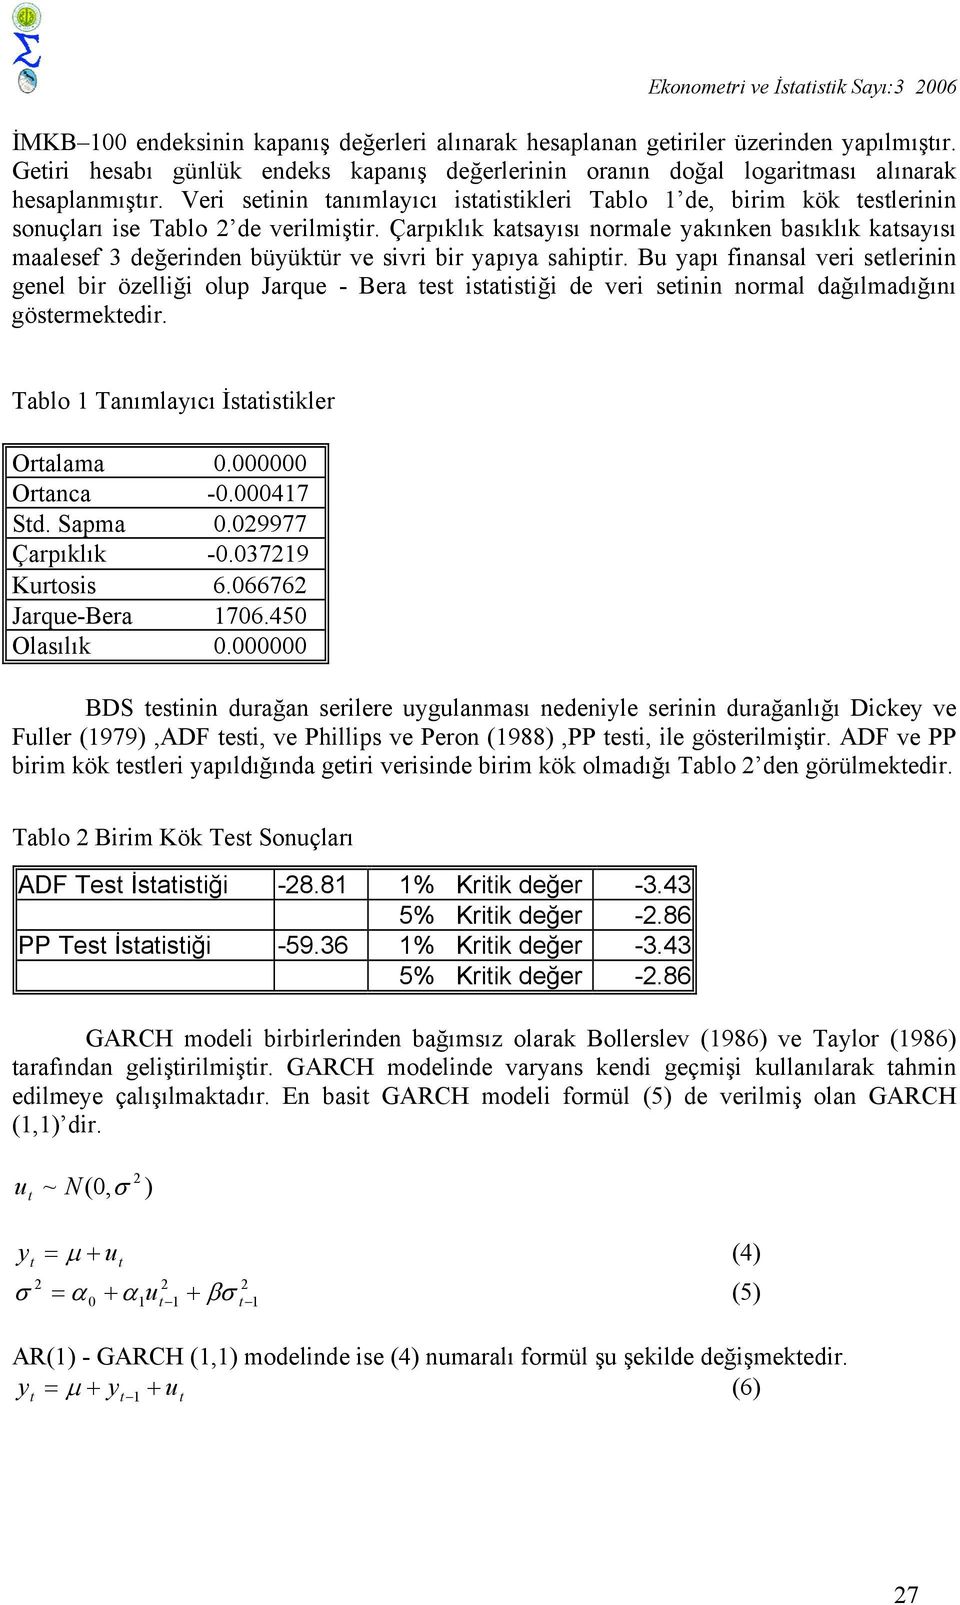 Veri setinin tanımlayıcı istatistikleri Tablo 1 de, birim kök testlerinin sonuçları ise Tablo 2 de verilmiştir.